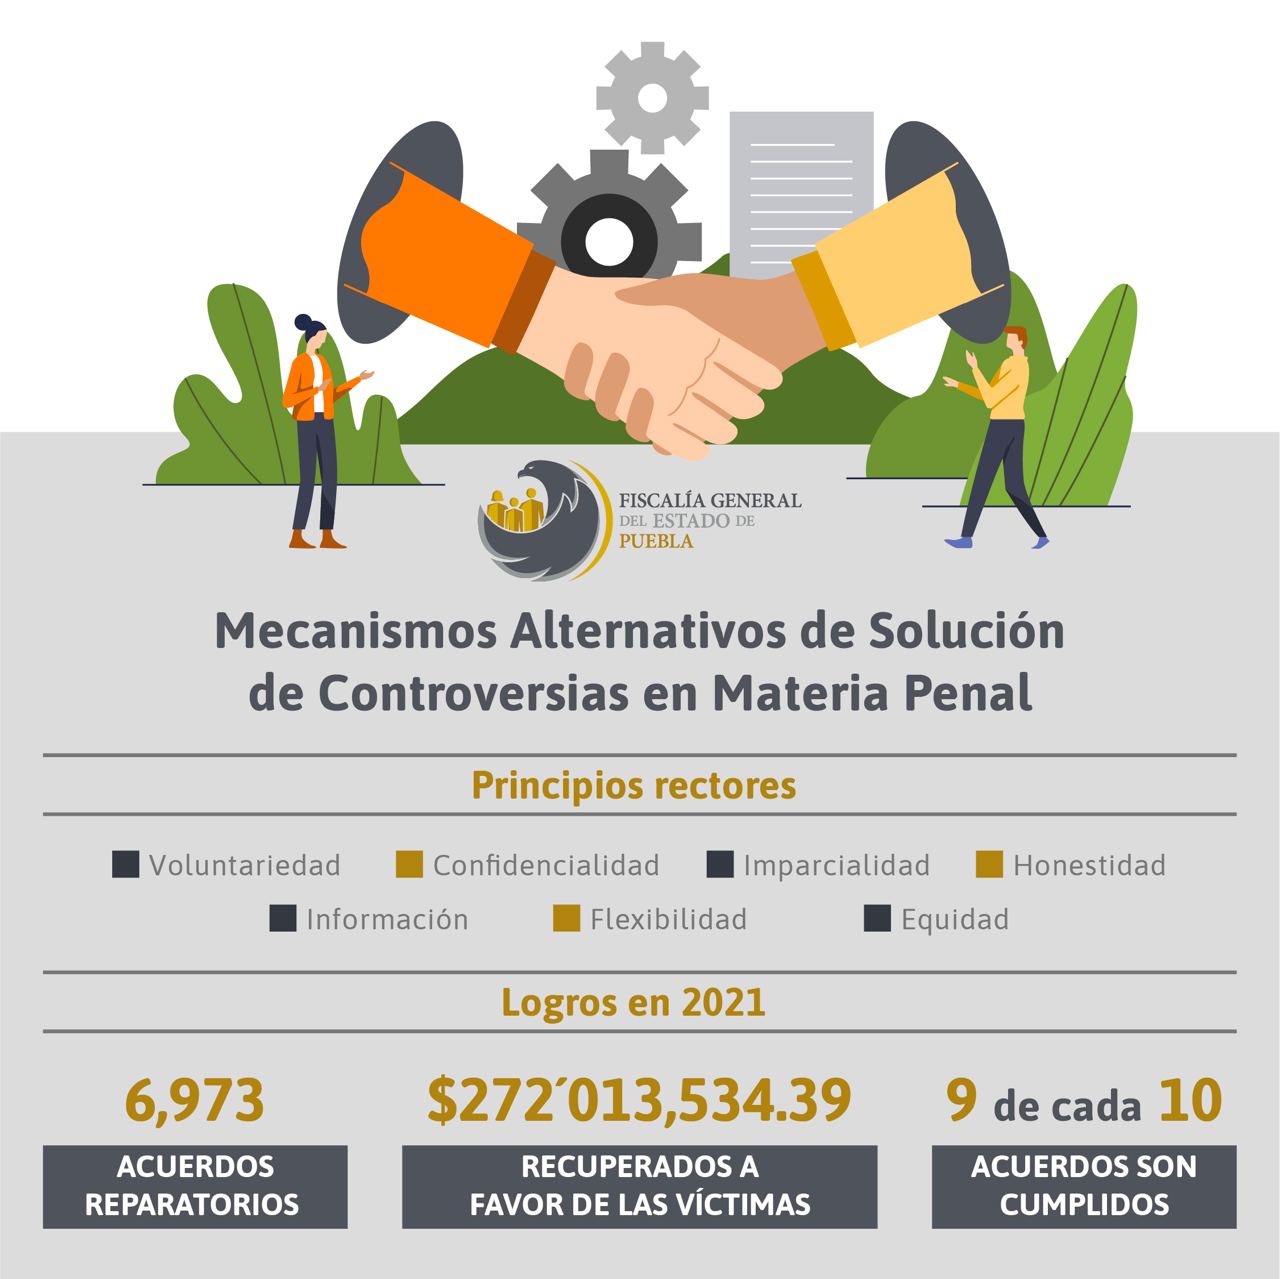 Más de 6 mil acuerdos reparatorios logró la Fiscalía de Puebla en 2021